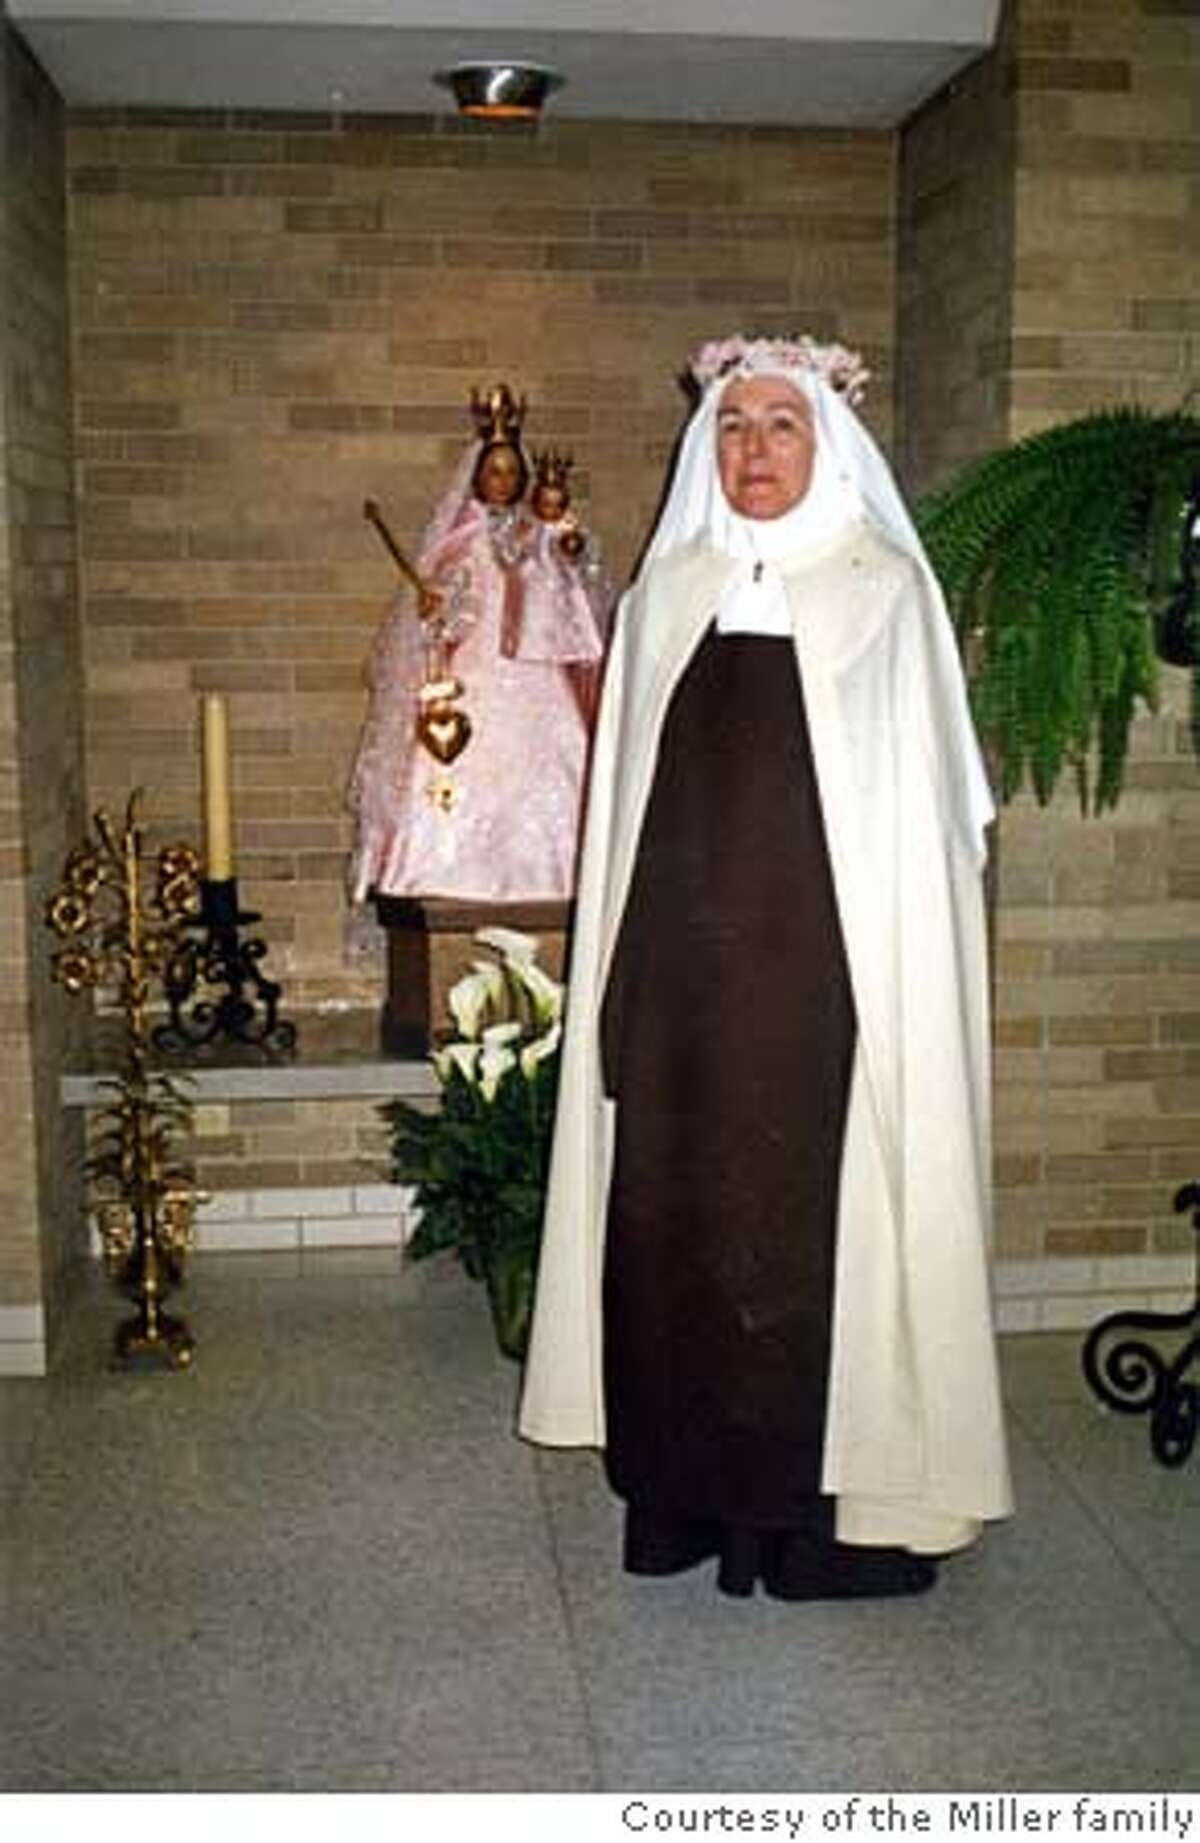 Sister Mary Joseph on day she becasem postulant, 1990